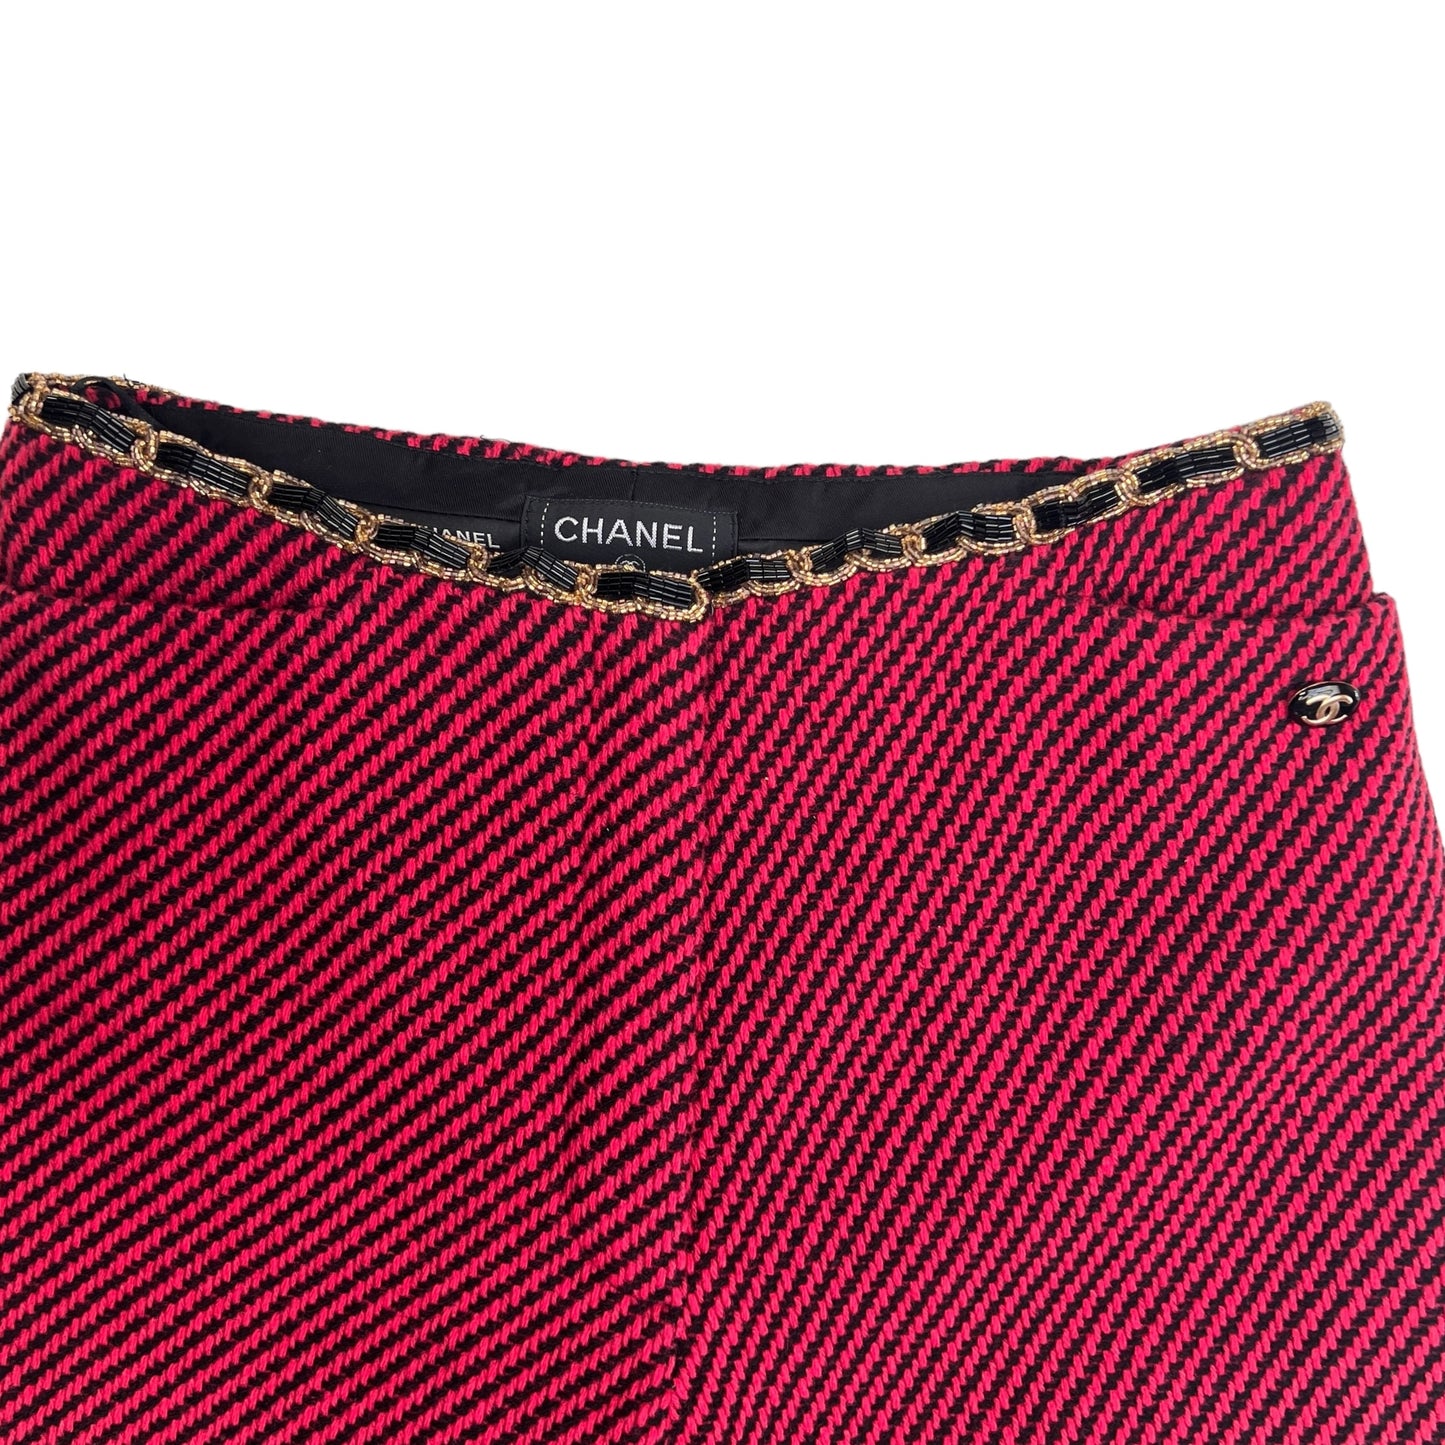 Red Tweed Pants - XS